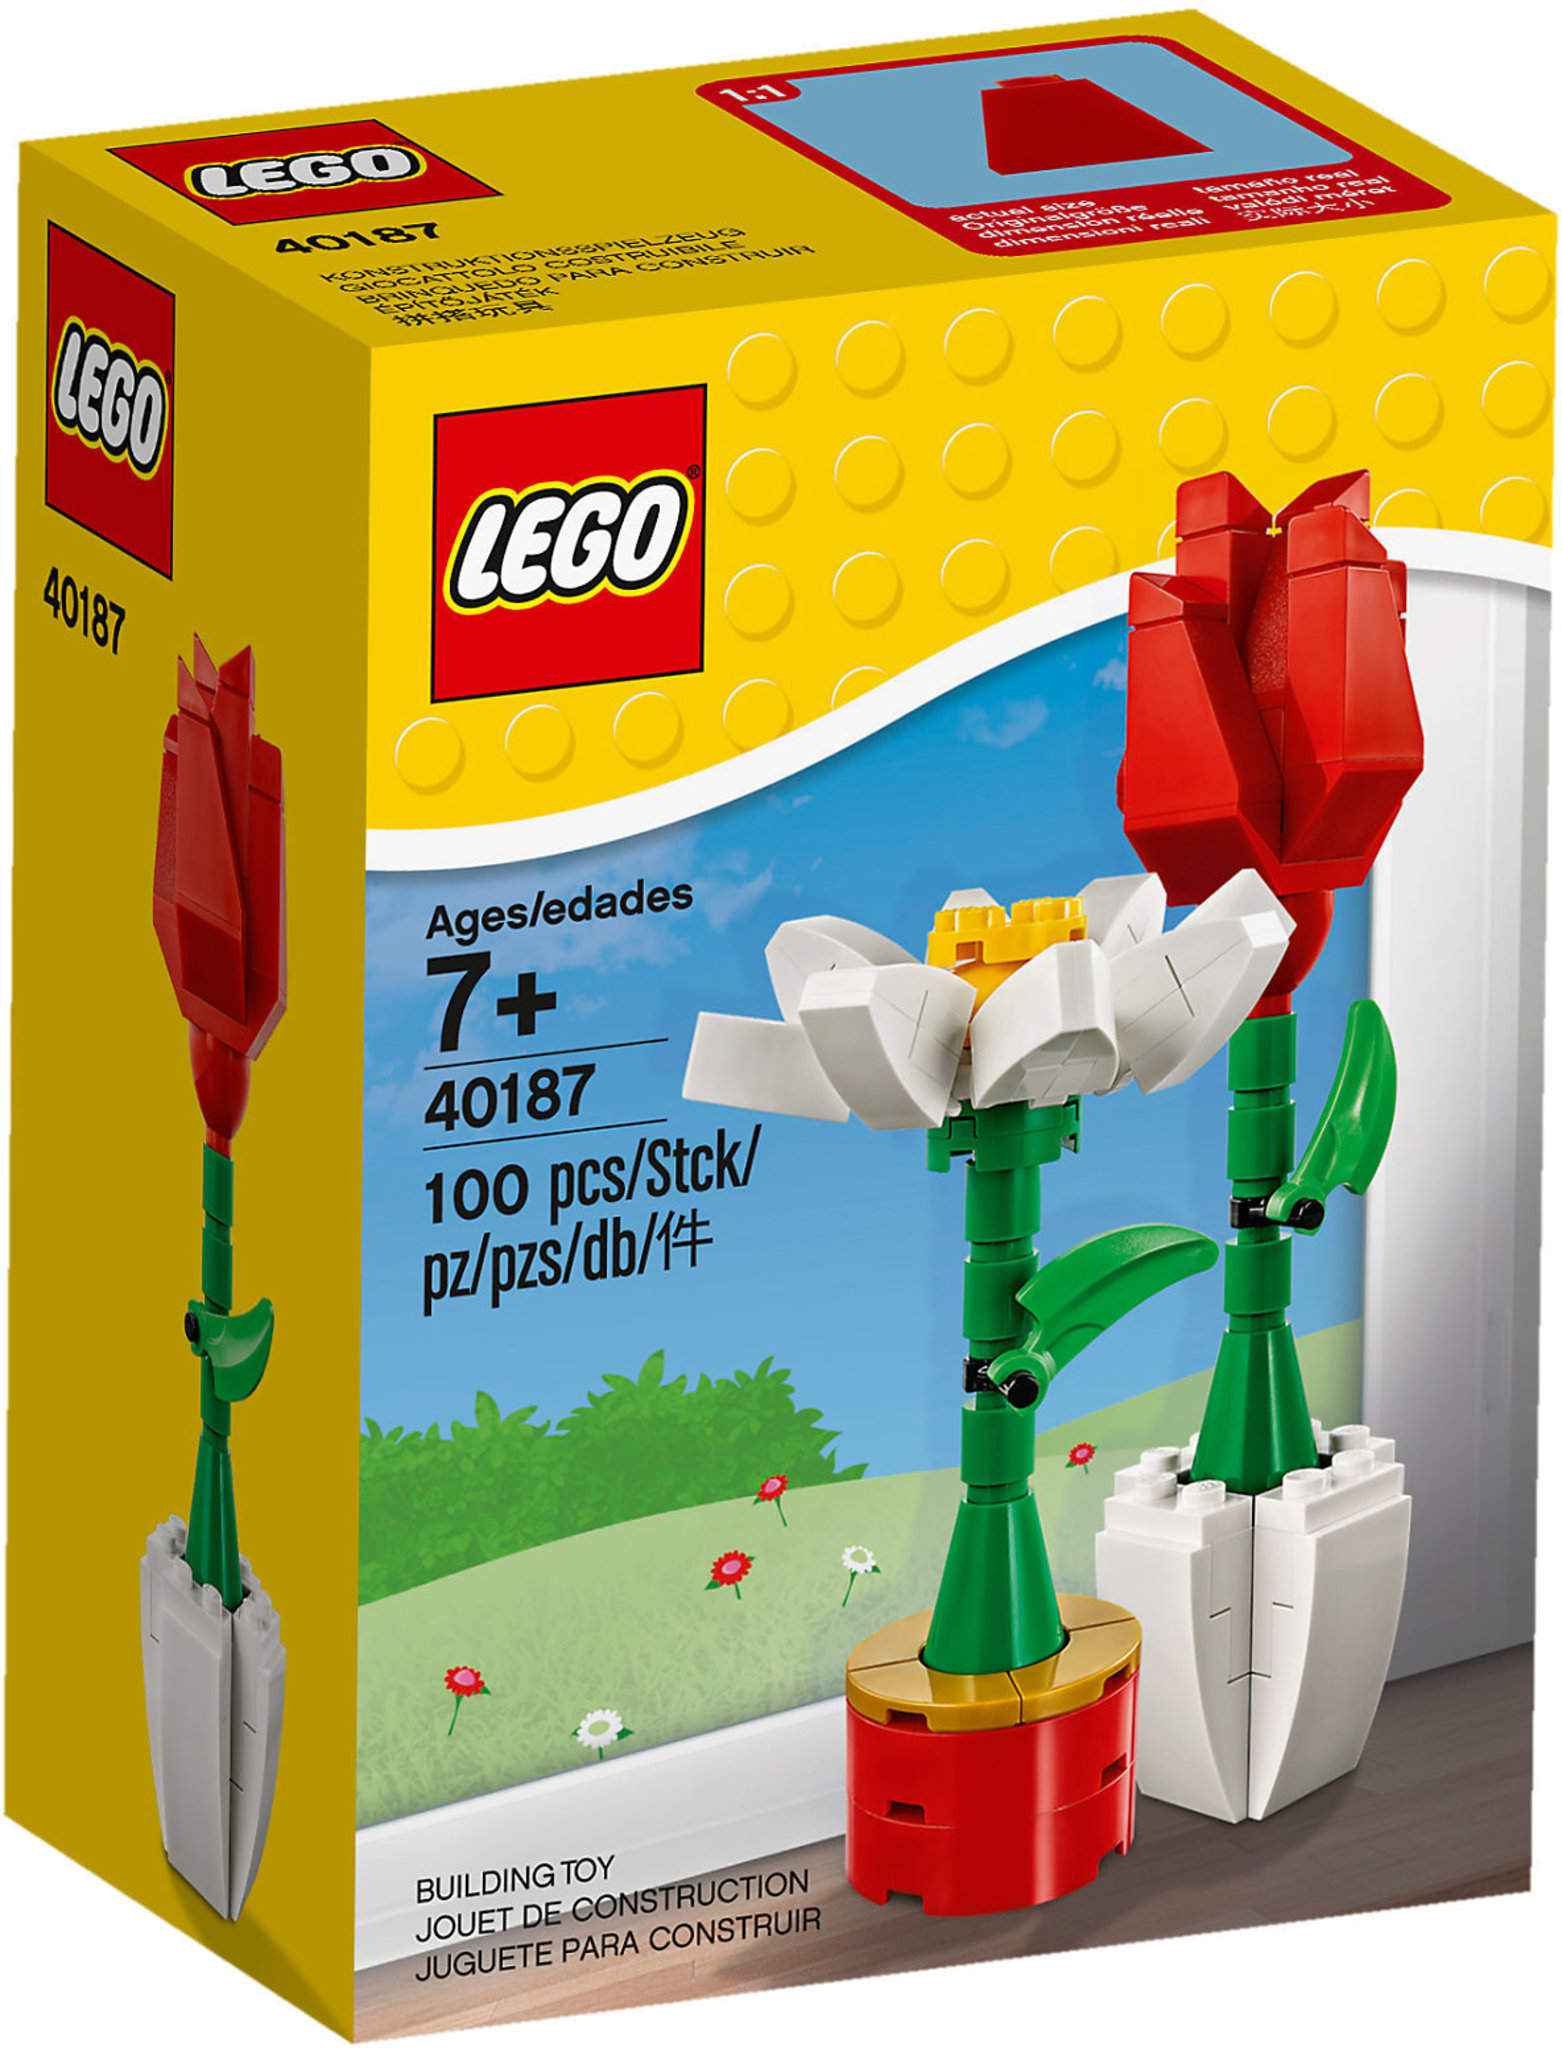 Fiore Lego Friends